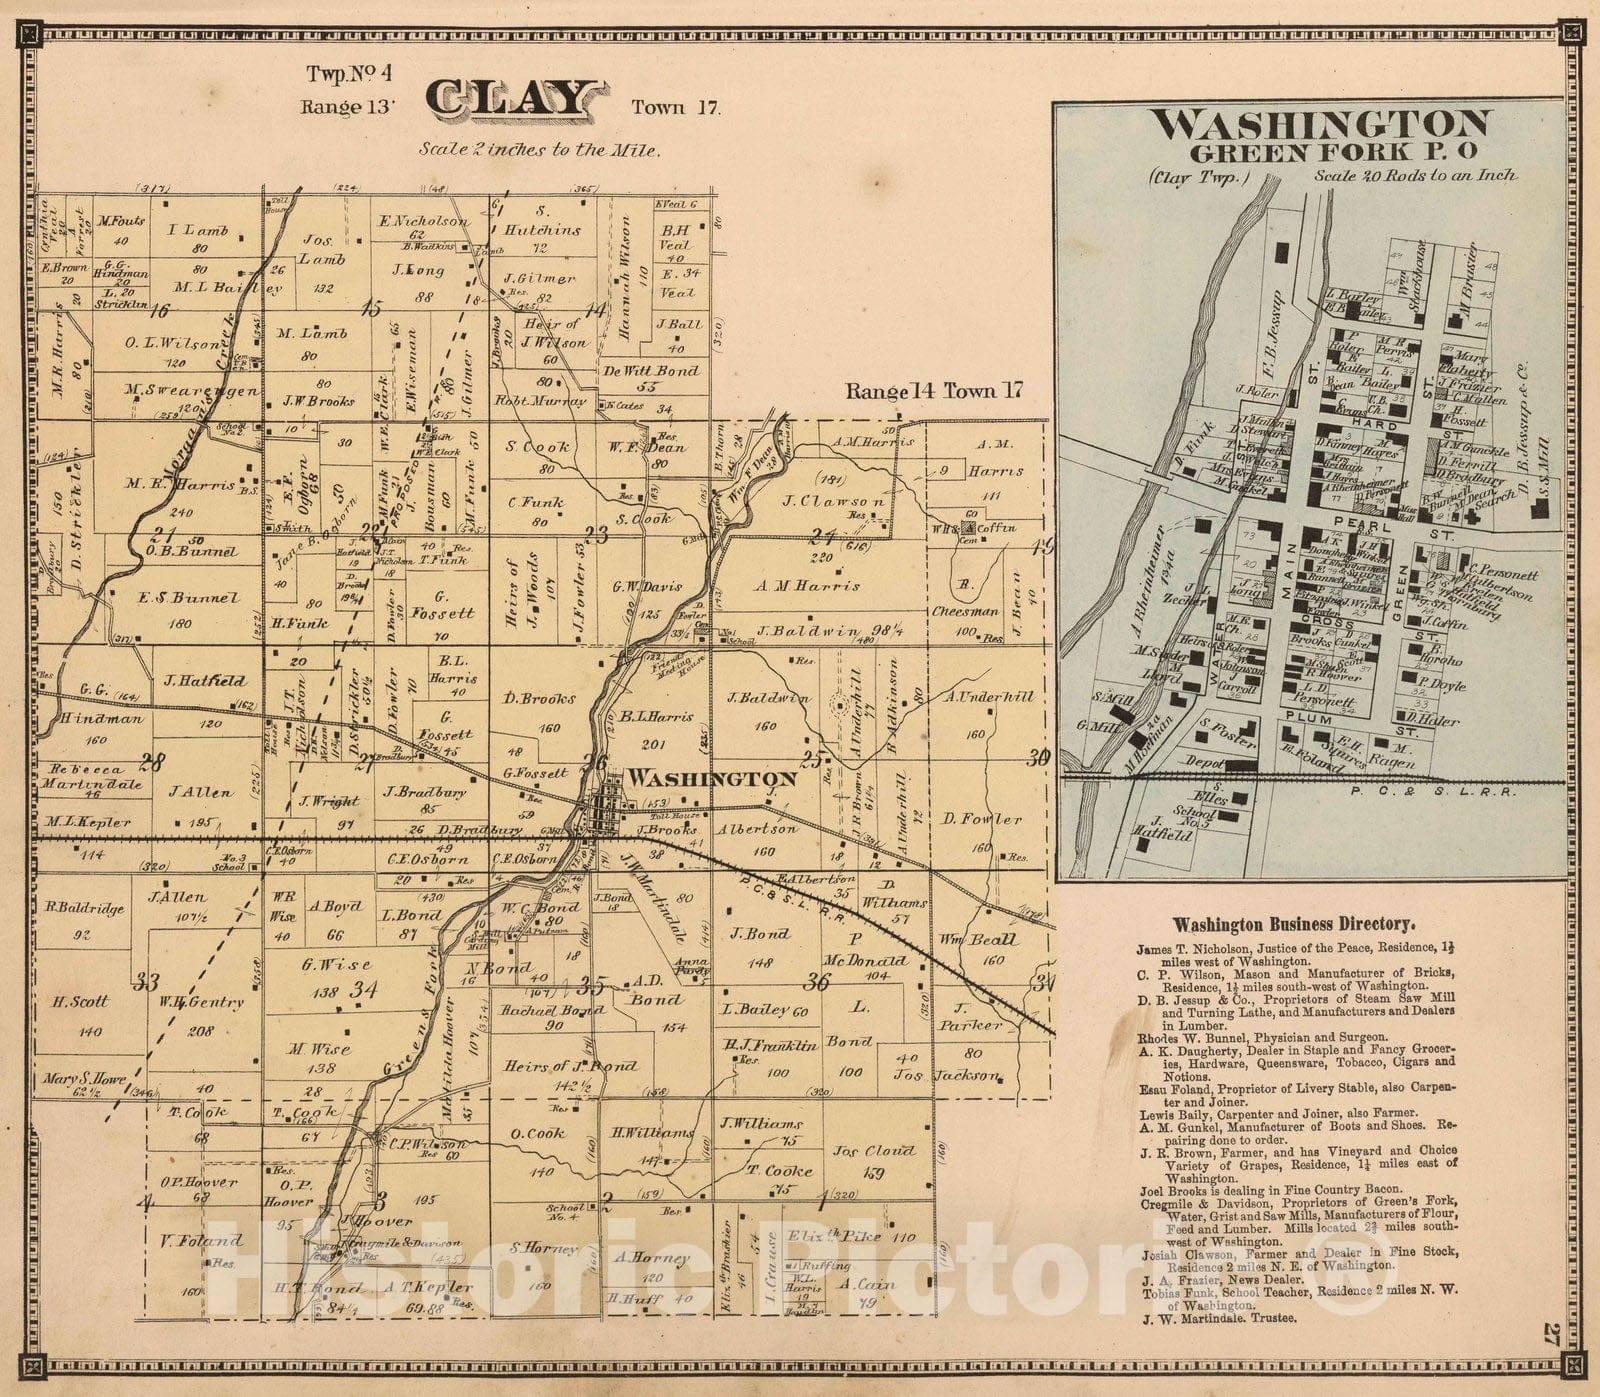 Historic Map : 1874 Clay Township, Wayne County, Indiana. Washington, Green Fork P.O. - Vintage Wall Art